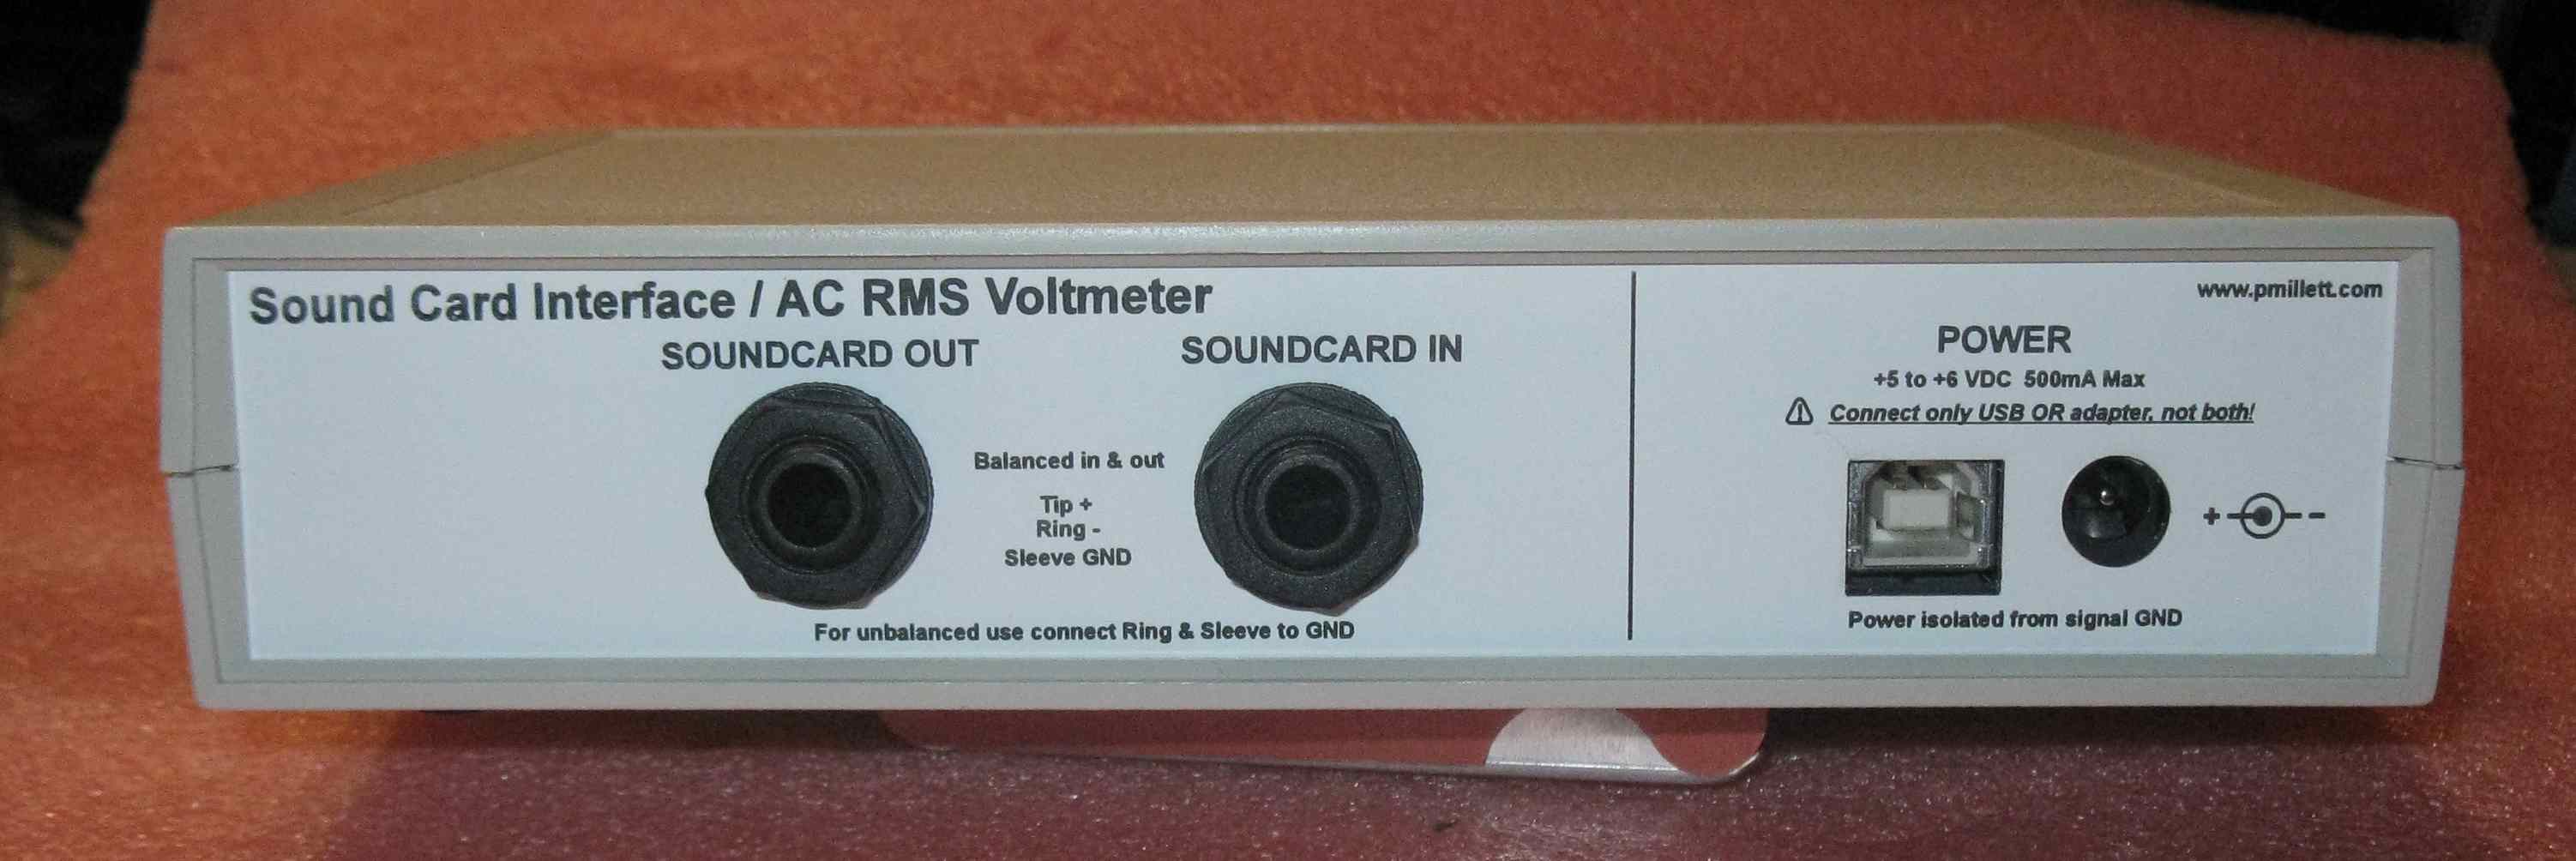 sound card calibration amateur